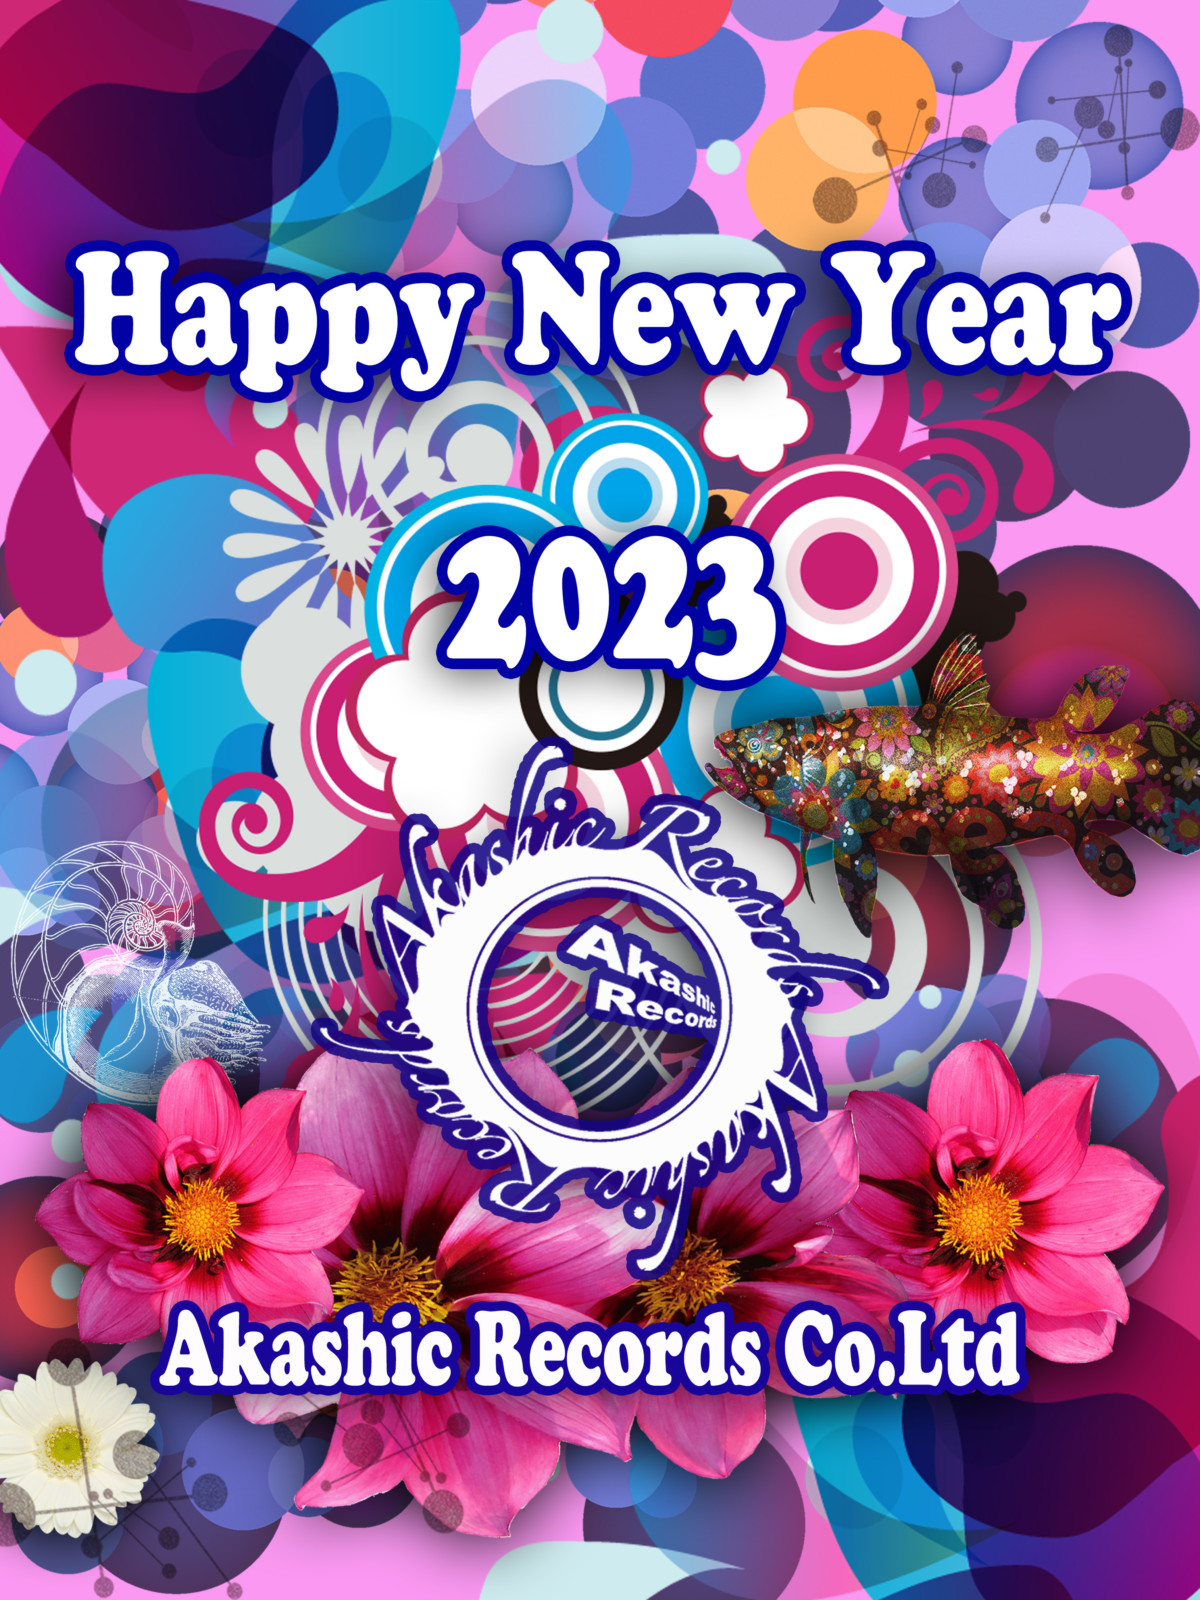 New Year 2023.Akashic